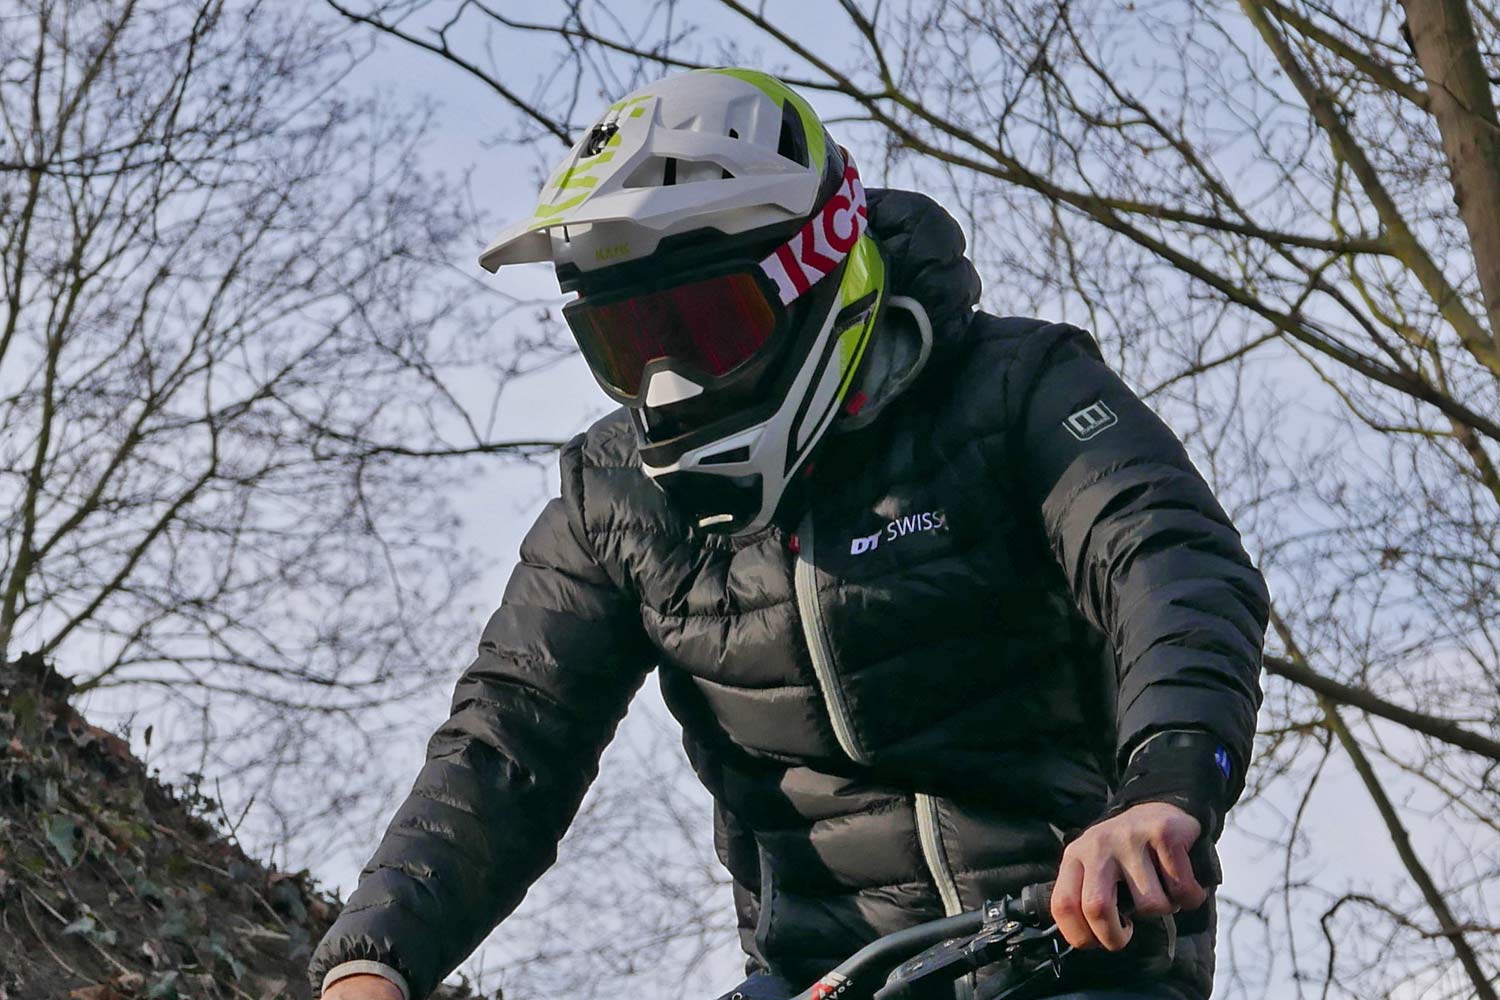 Kask Defender DH helmet, lightweight carbon full-face enduro gravity downhill MTB mountain bike helmet